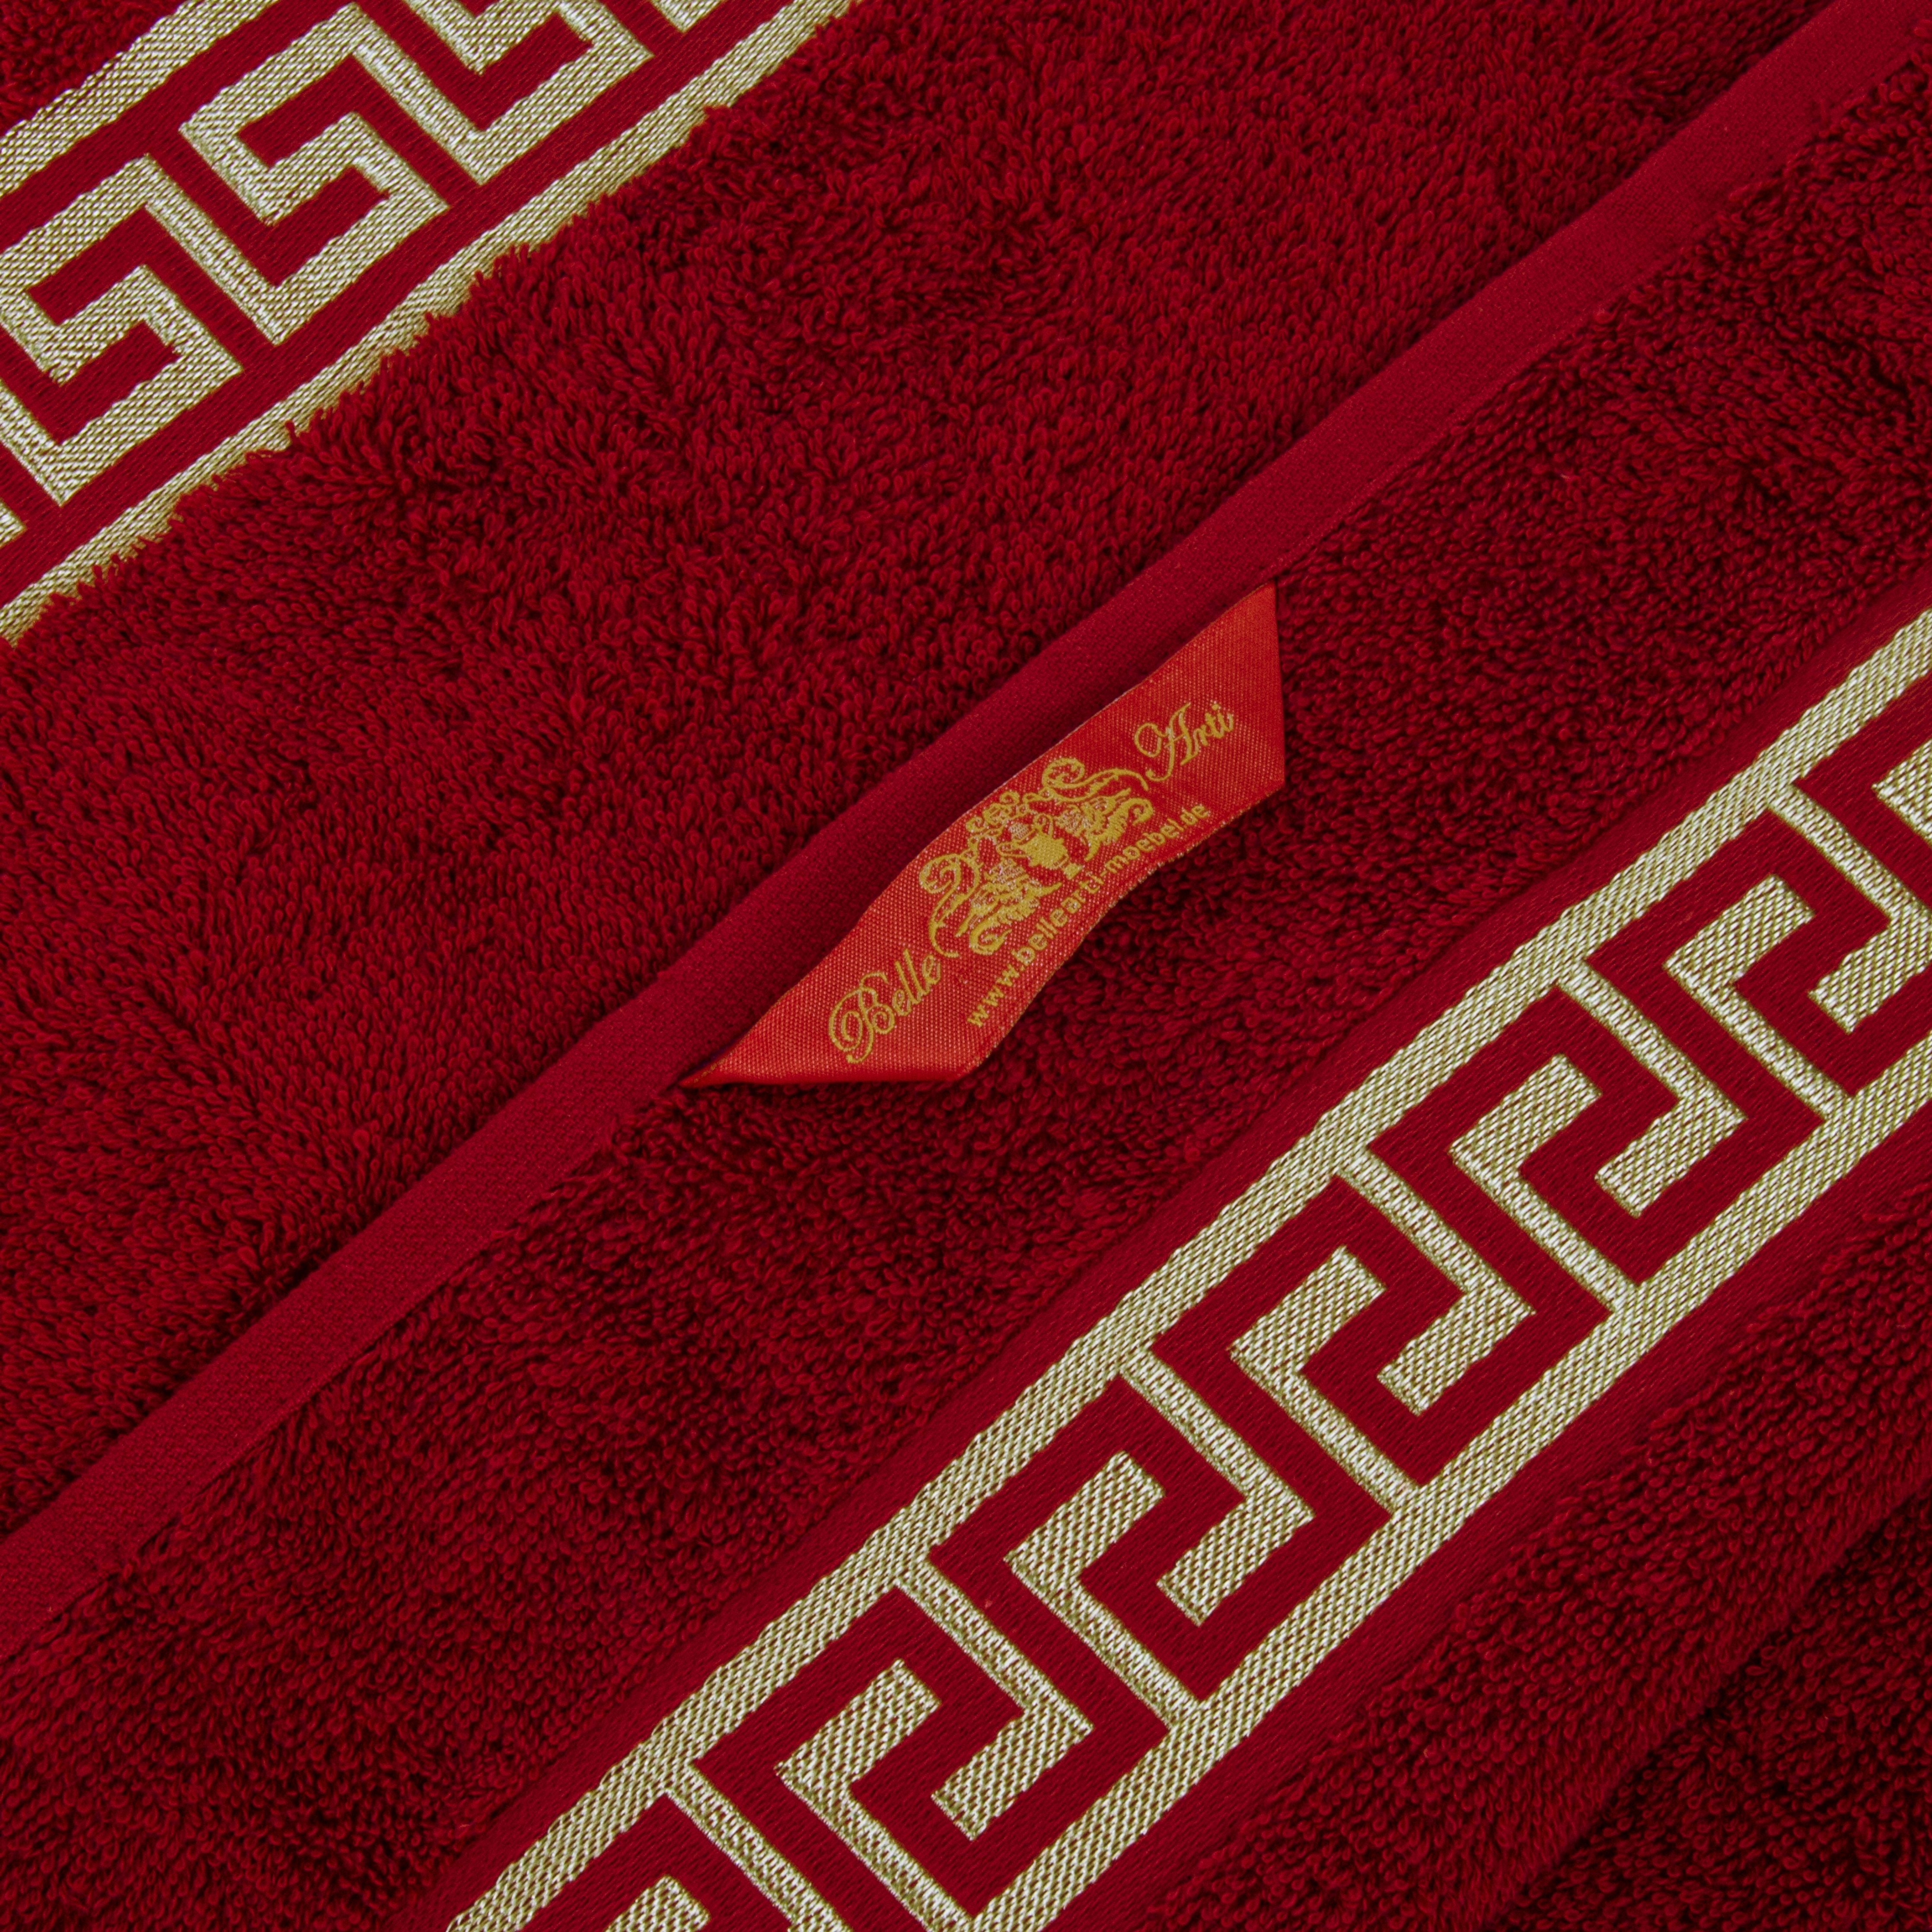 Luxus Handtücher Mäander in rot gold eingestickt - 100% Baumwolle Frottee - okötex